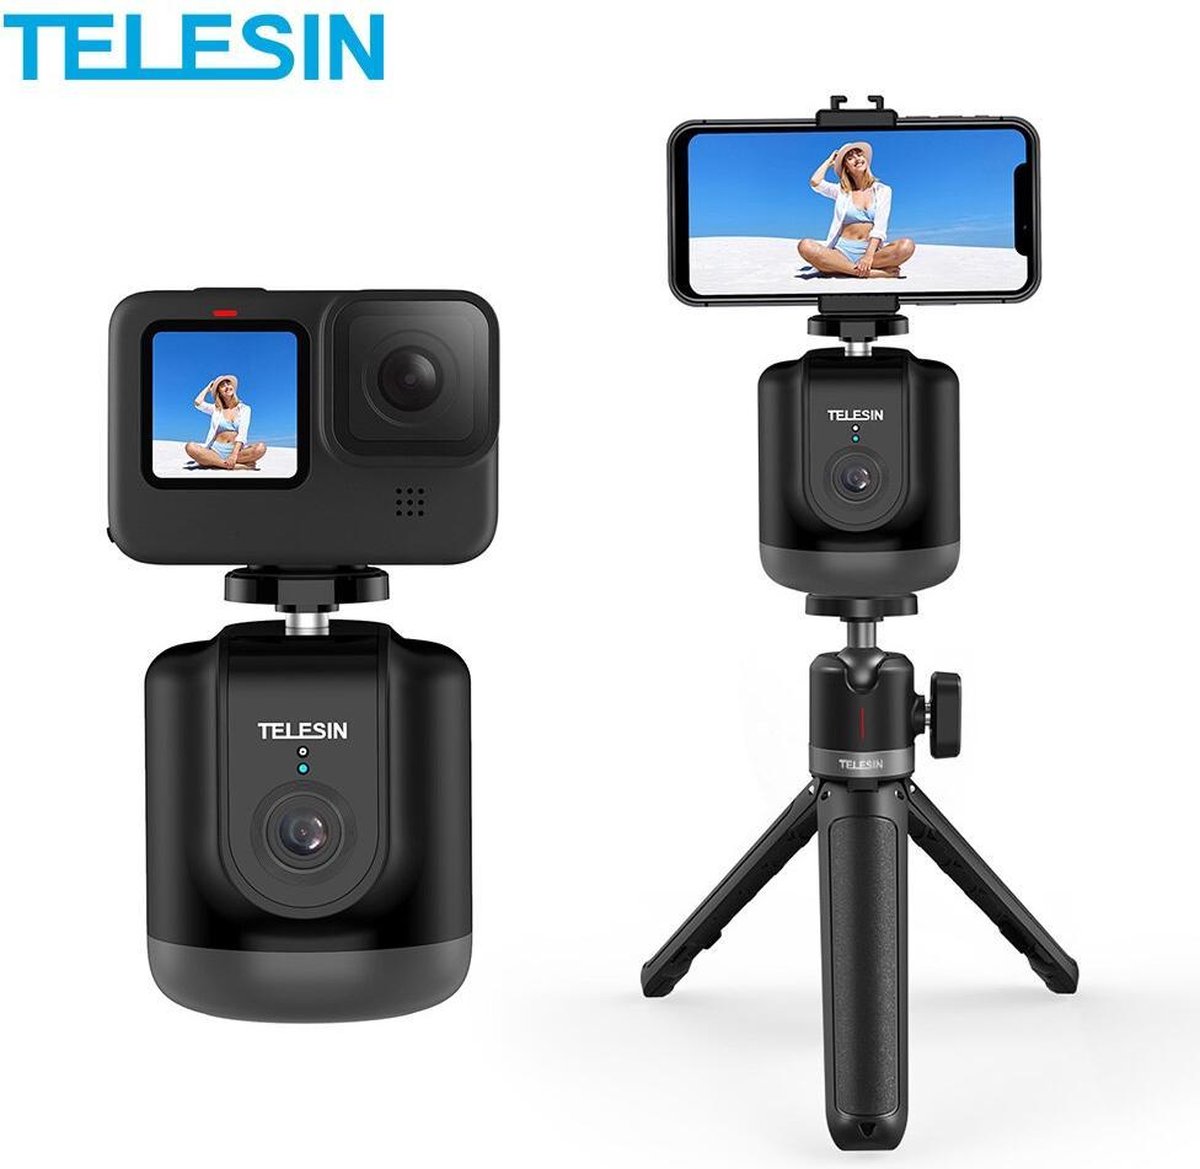 PRO SERIES Smart Volgen Pan-Tilt Gimbal Selfie 360° Rotatie Auto Gezicht Object Tracking